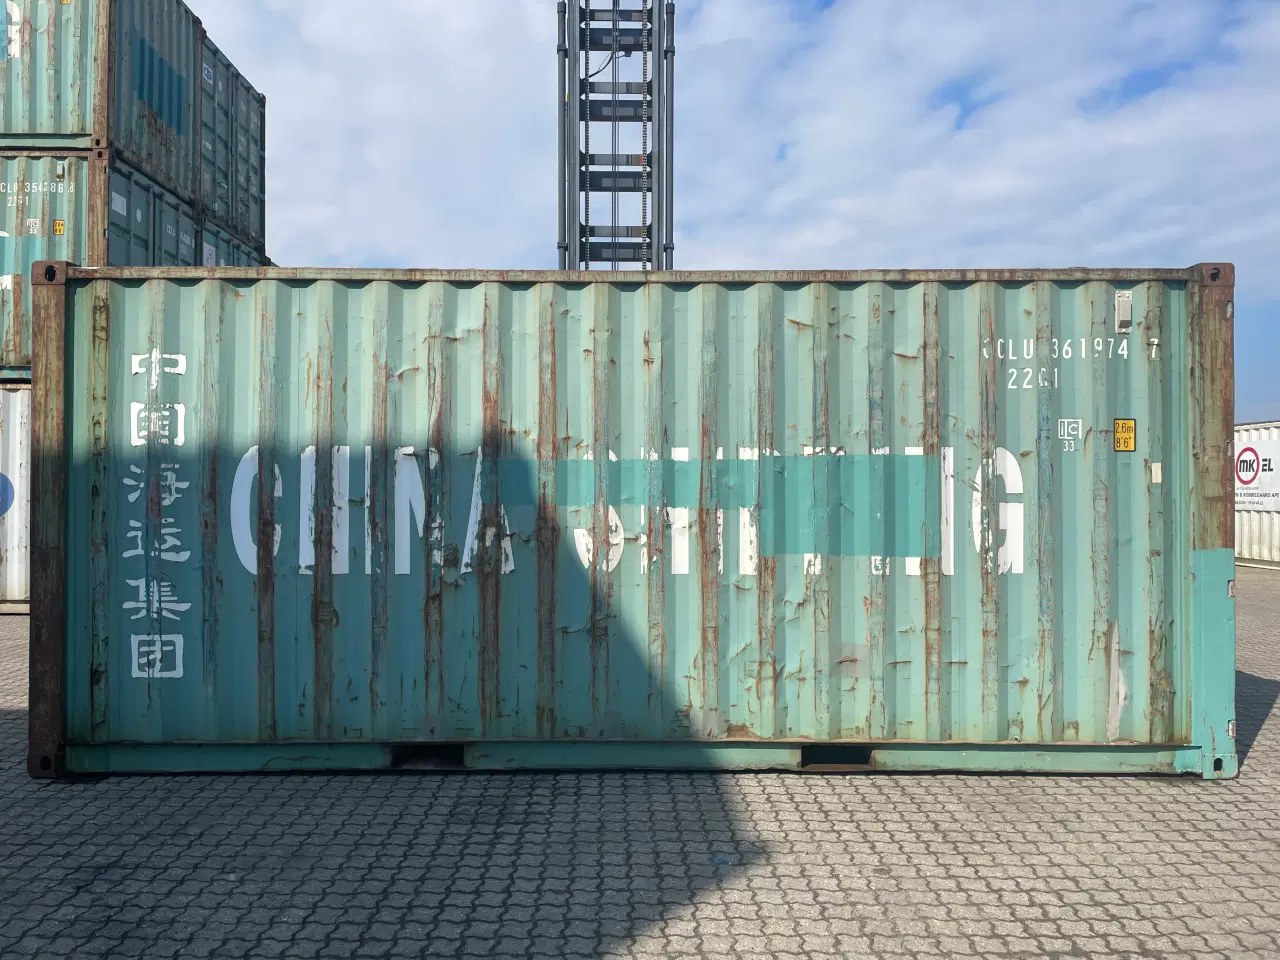 Billede 5 - 20 fods Container- ID: CCLU361974-7